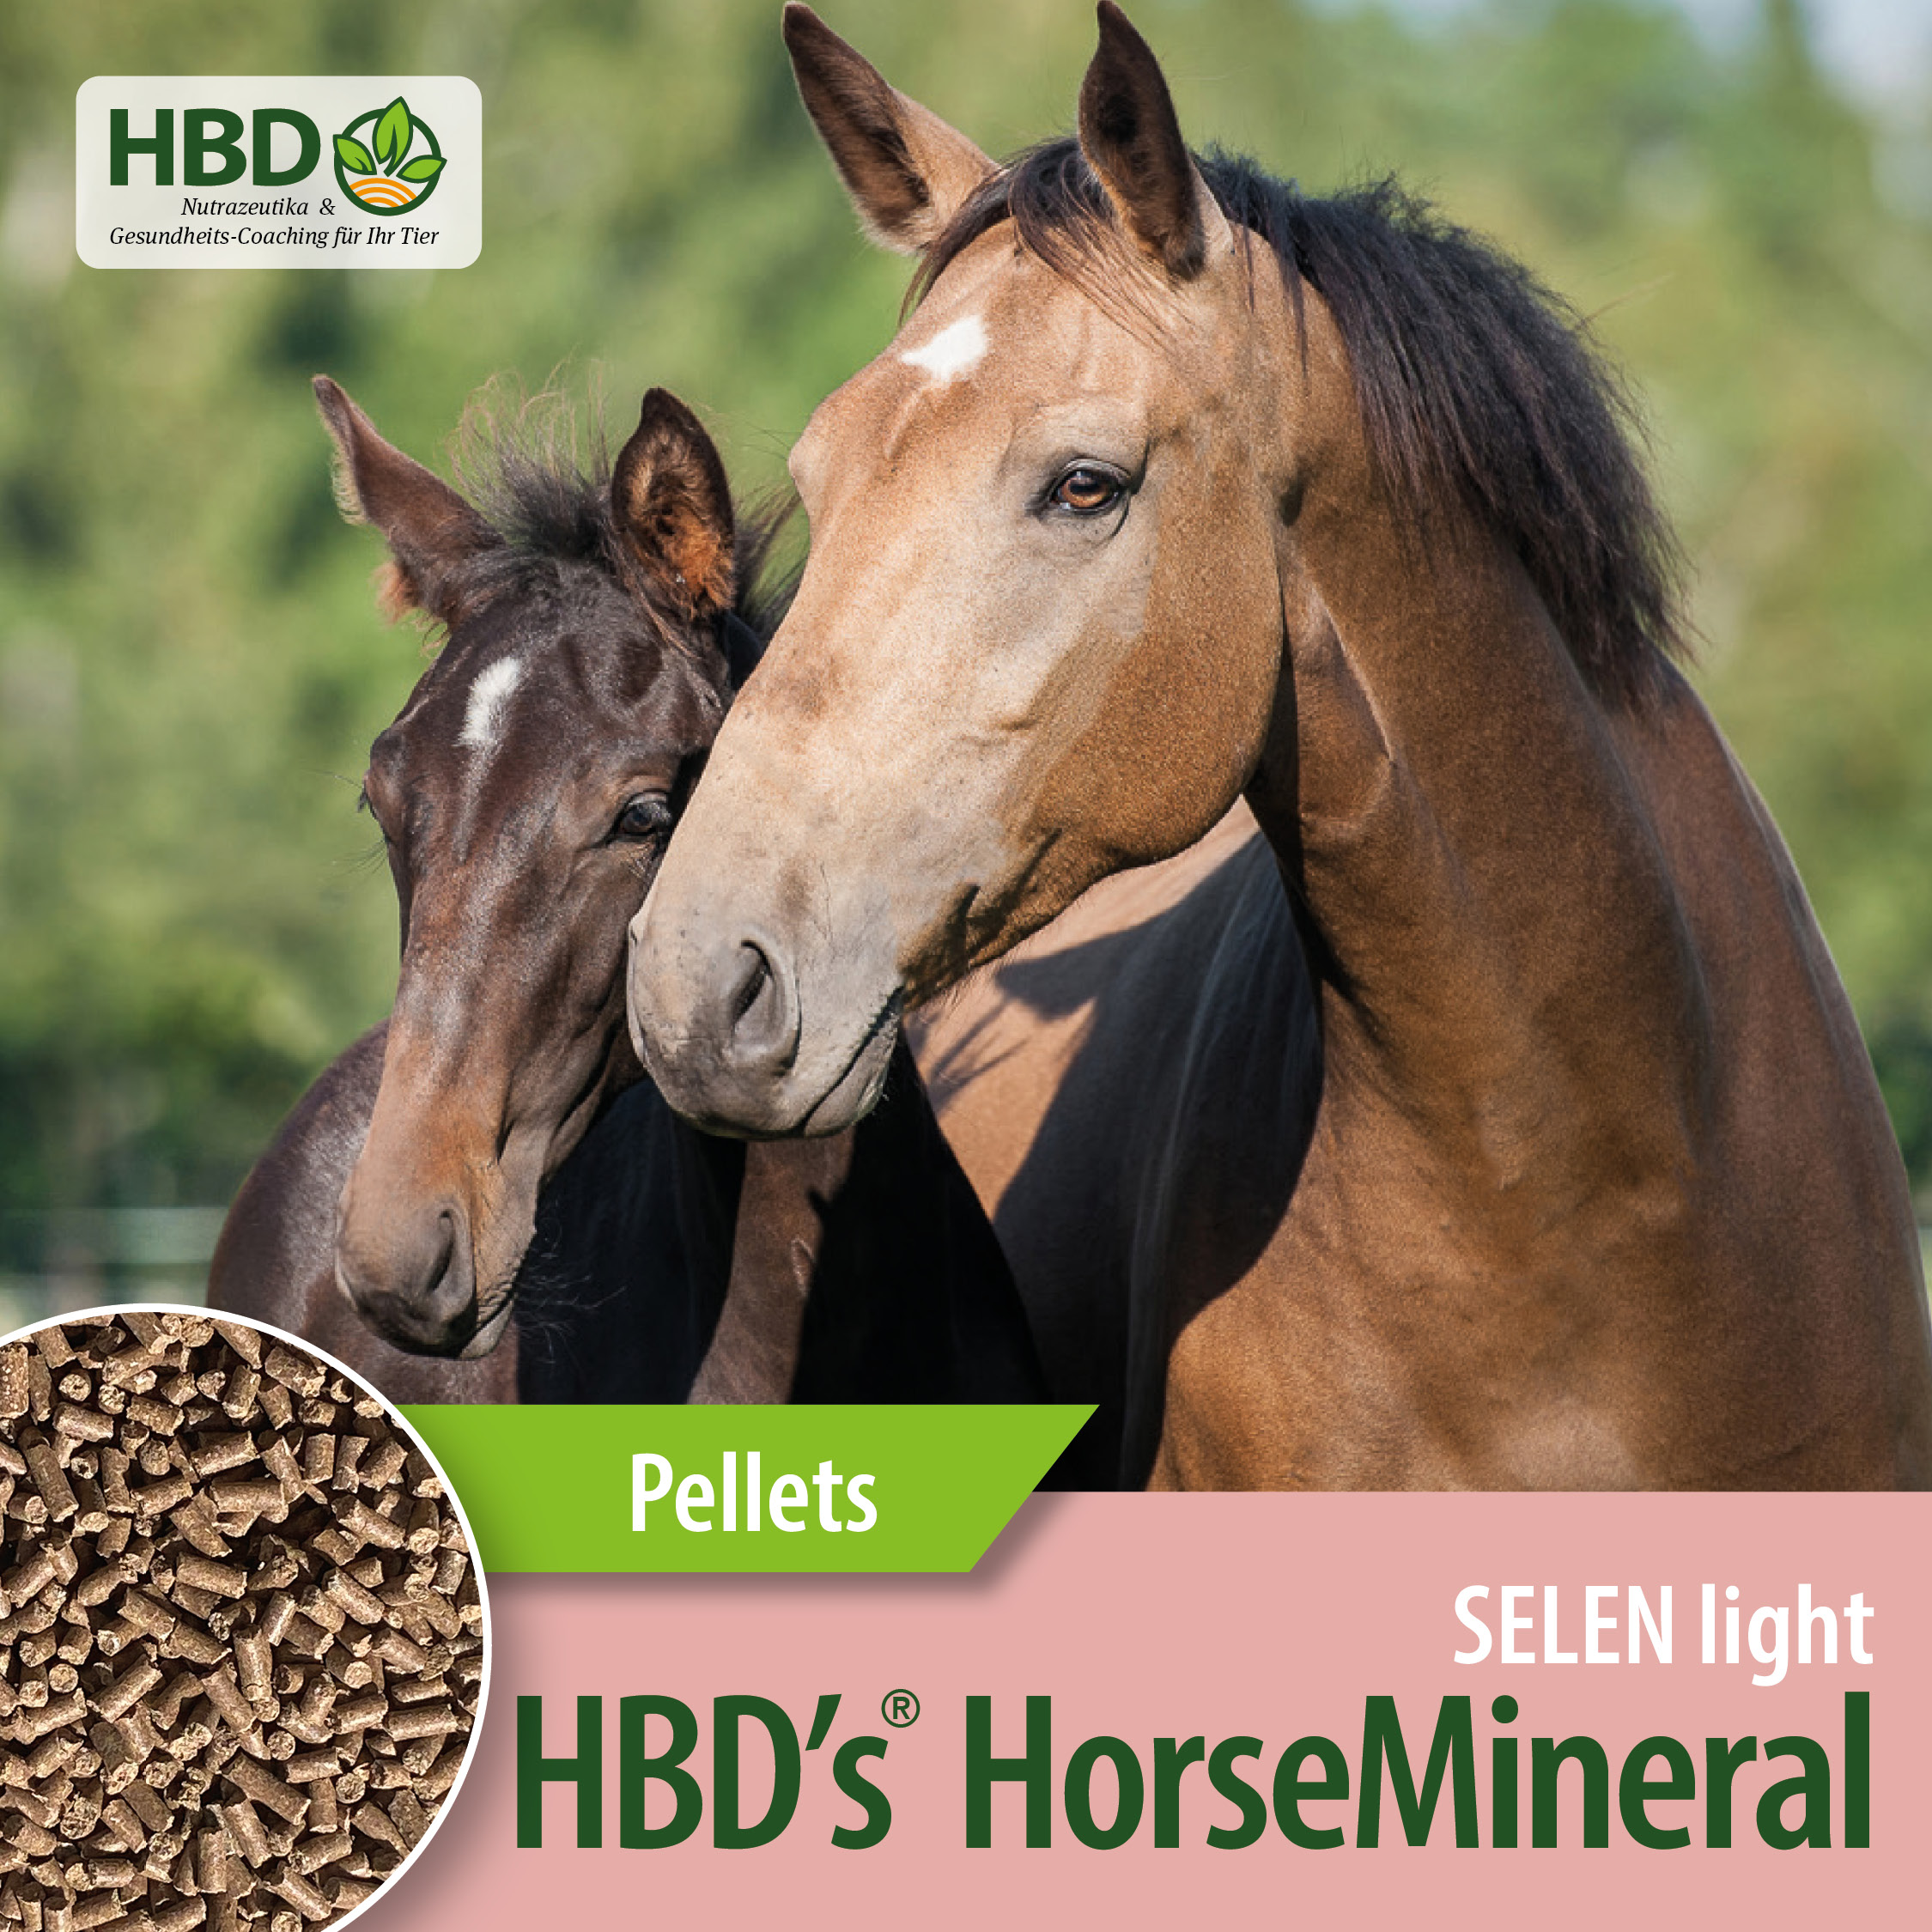 HBD’s® HorseMineral SELEN light, MBA-frei (melasse-, bierhefe-, apfeltresterfrei) Pellets